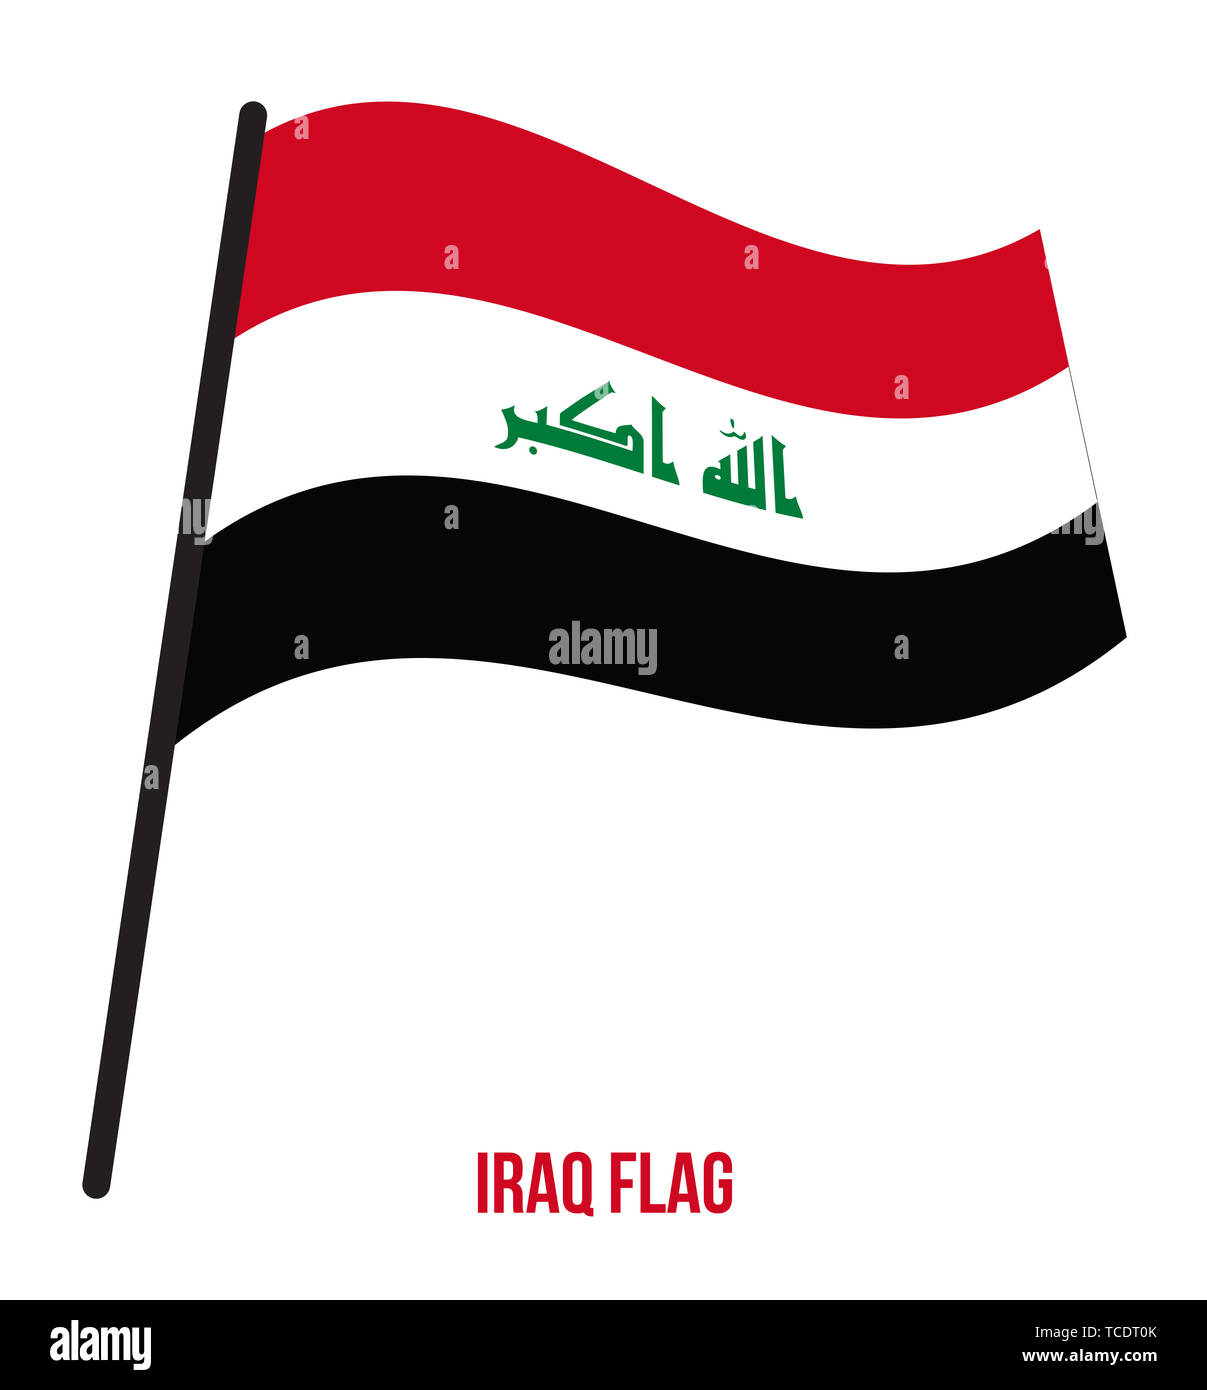 Iraq bandiera sventola illustrazione vettoriale su sfondo bianco. Iraq bandiera nazionale. Foto Stock